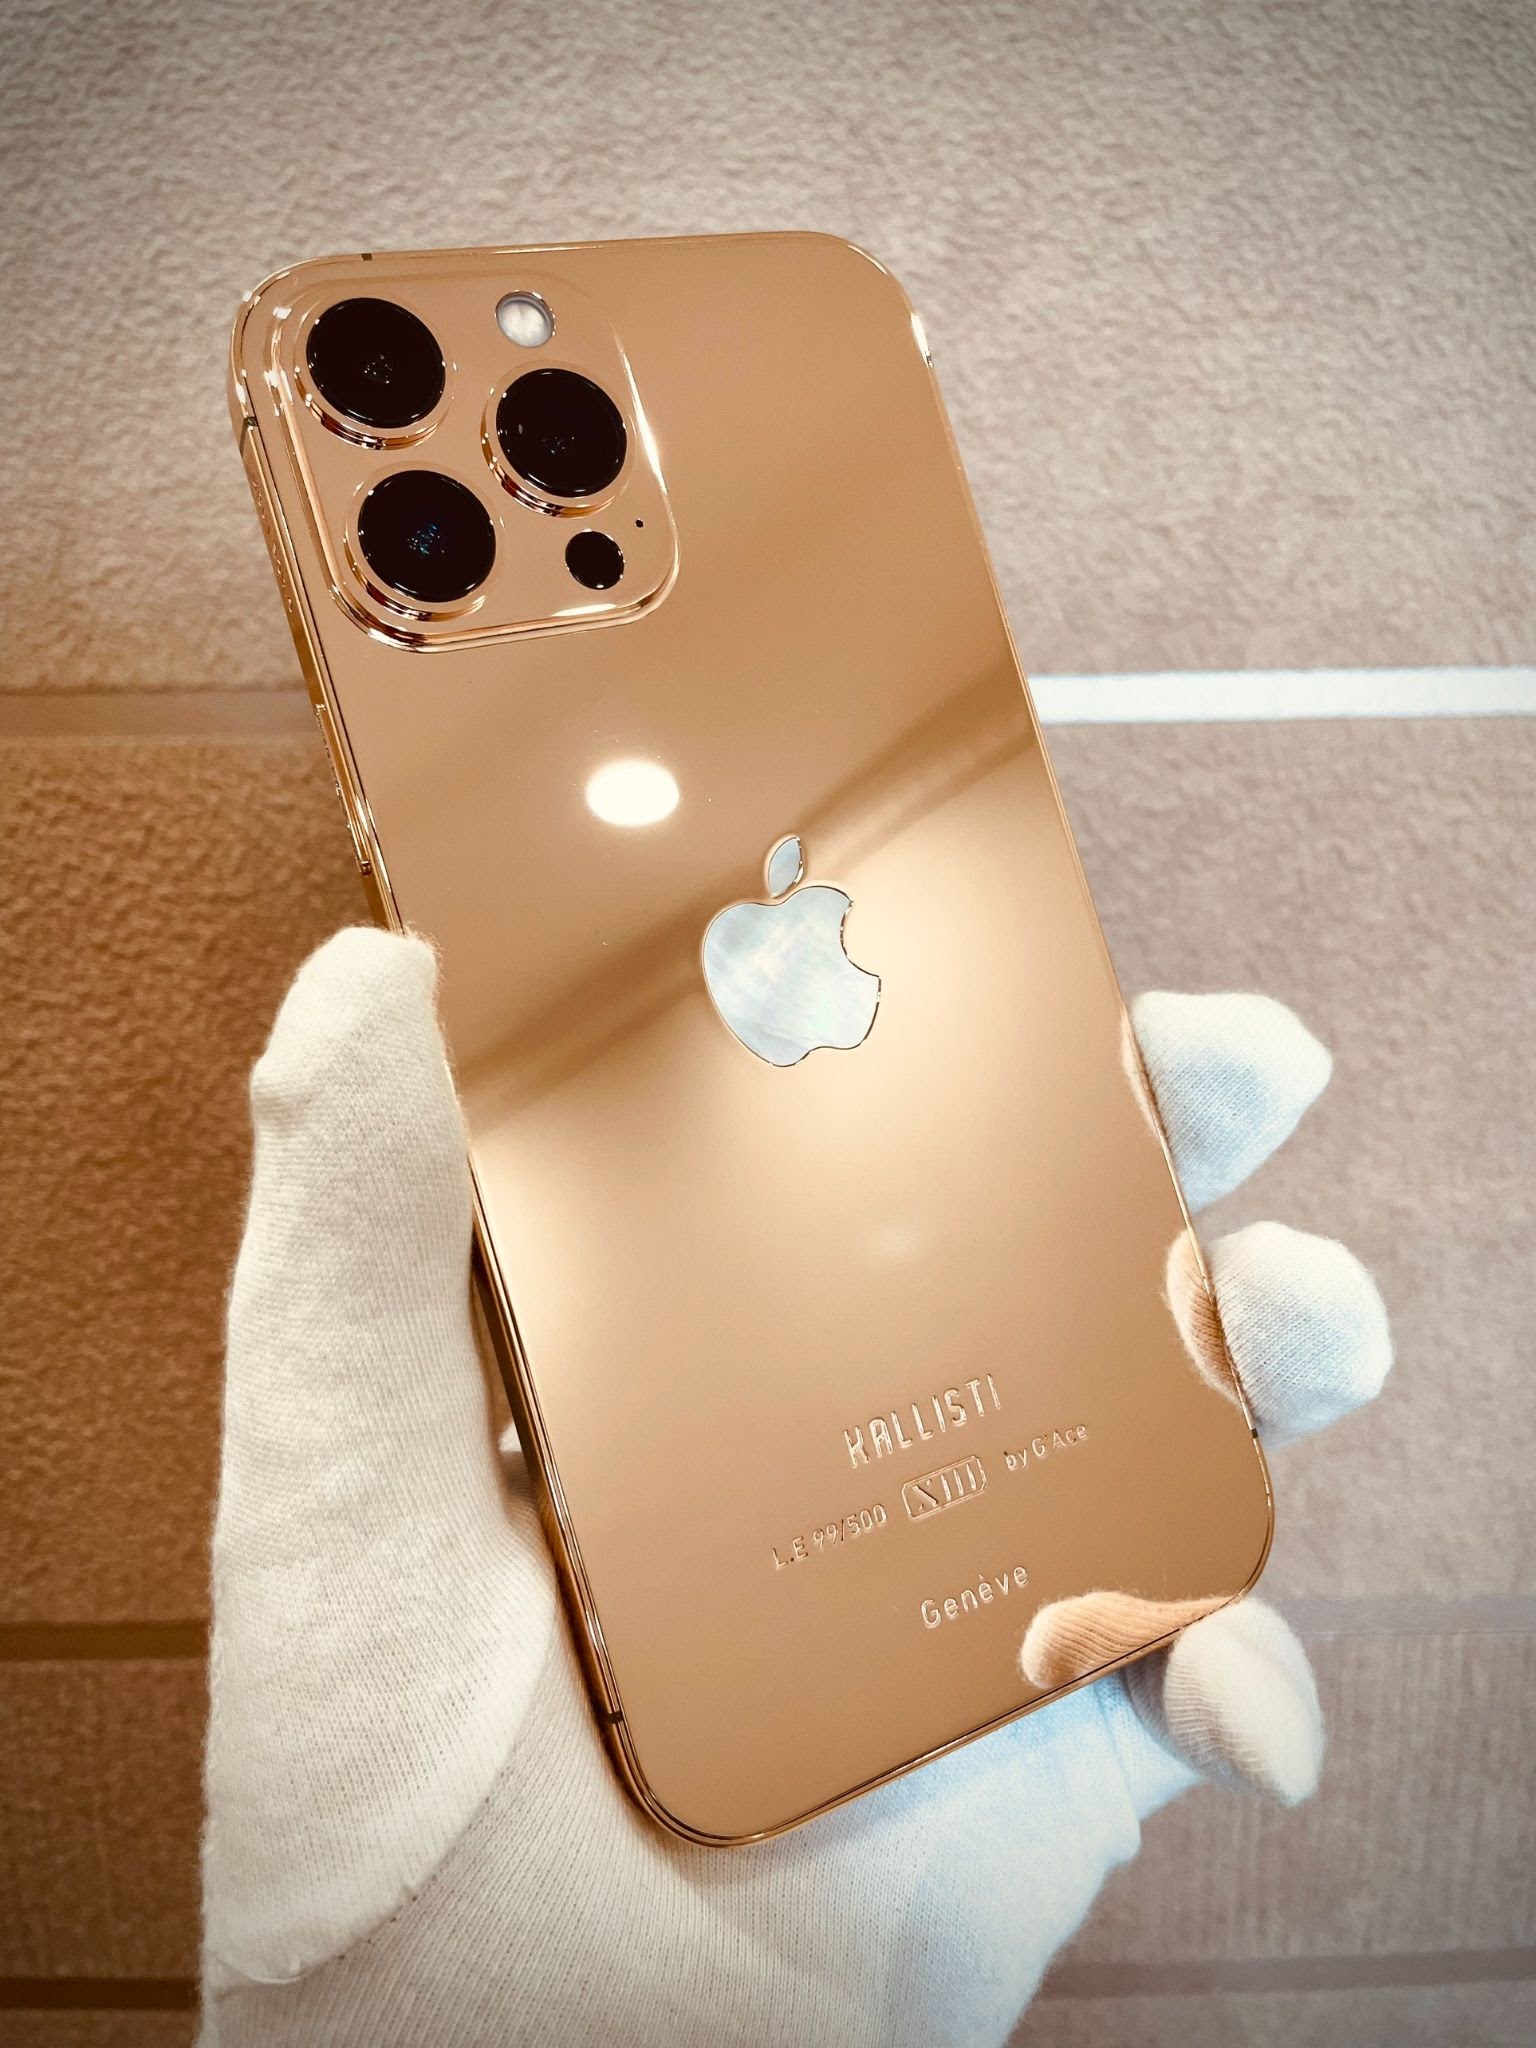 Không gì có thể đánh giá được sự sang trọng và đẳng cấp của chiếc iPhone 13 Pro Max bản mạ vàng và kim cương này. Chi tiết cẩn thận từng đường nét, từng viên kim cương sẵn sàng khiến cho người xem phải ngã nghiêng trước sự tinh tế và tuyệt đẹp của nó. Bấm vào hình ảnh để ngắm nhìn sản phẩm các bạn nhé.